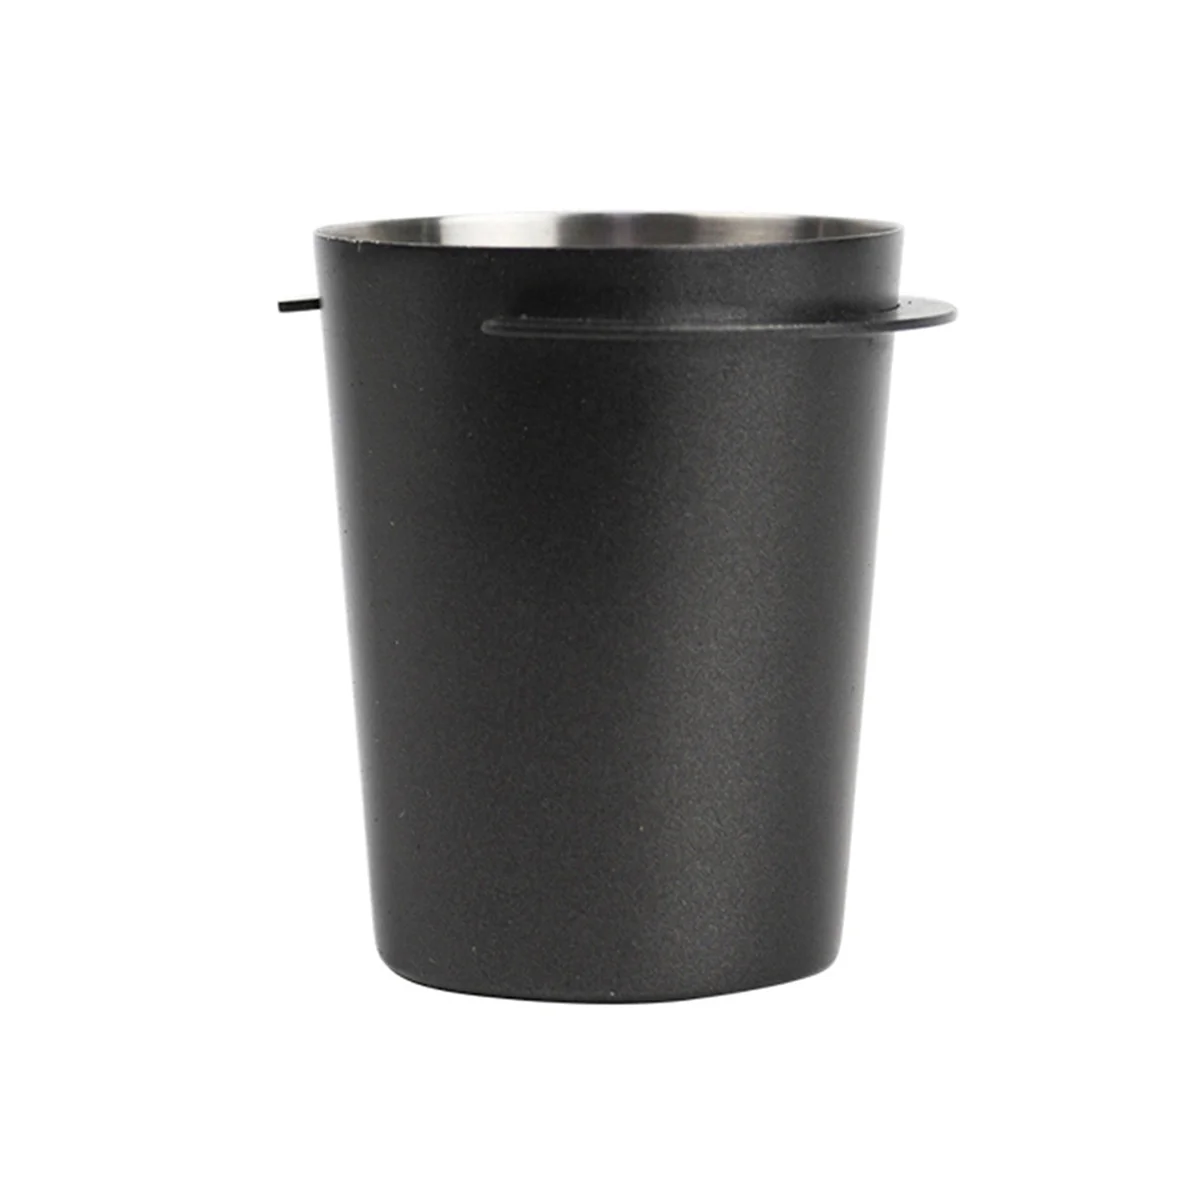 

Дозирующая чашка для кофе 58 мм, устройство для подачи порошка, устойчивая деталь, износостойкий распределитель, аксессуары для кофейной посуды, черный цвет